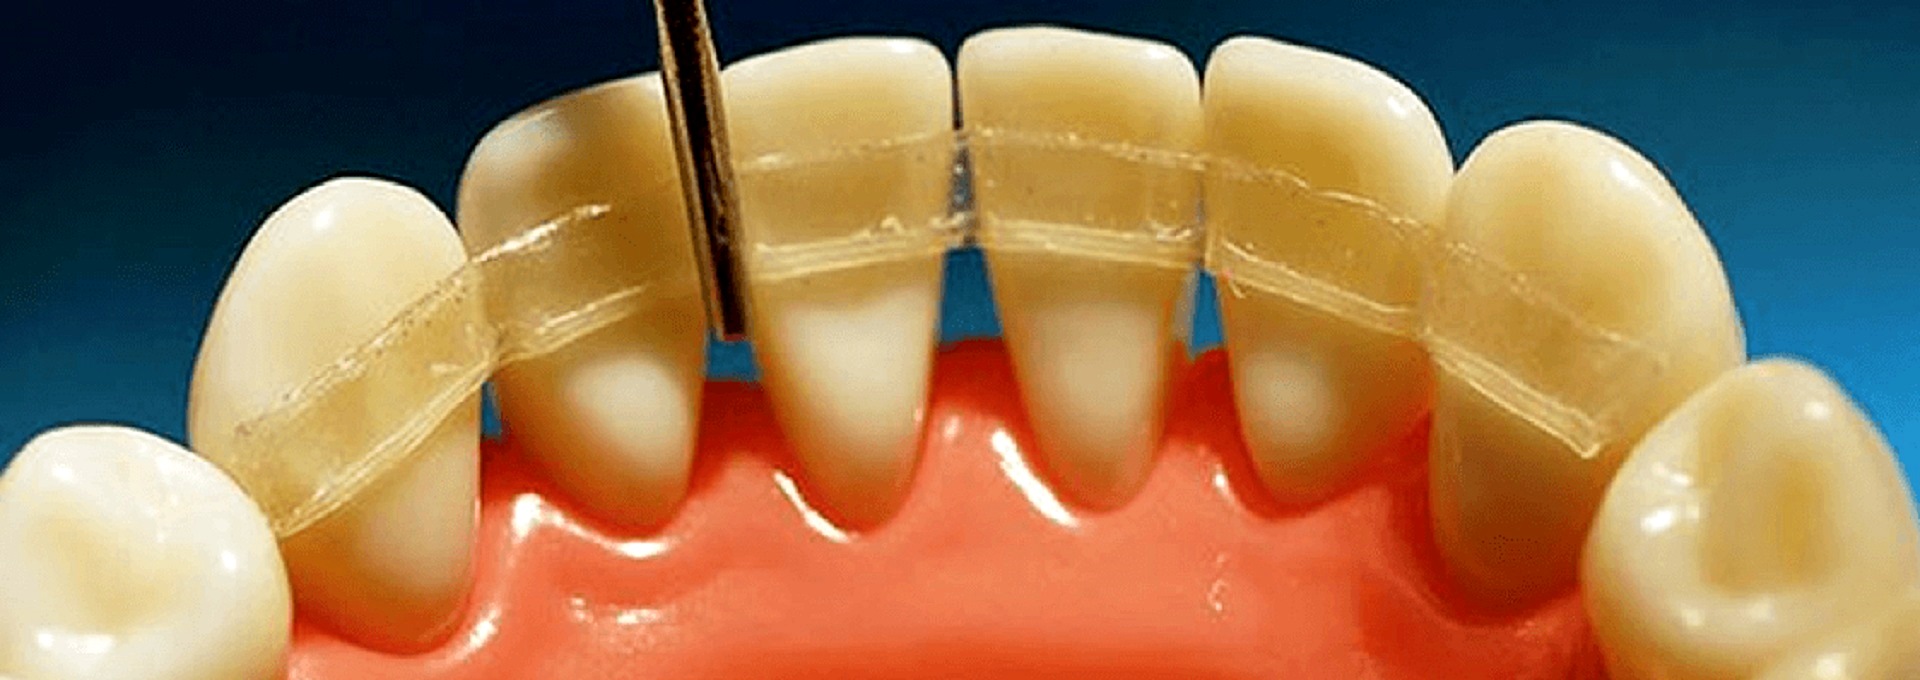 Шинирование зубов при пародонтозе